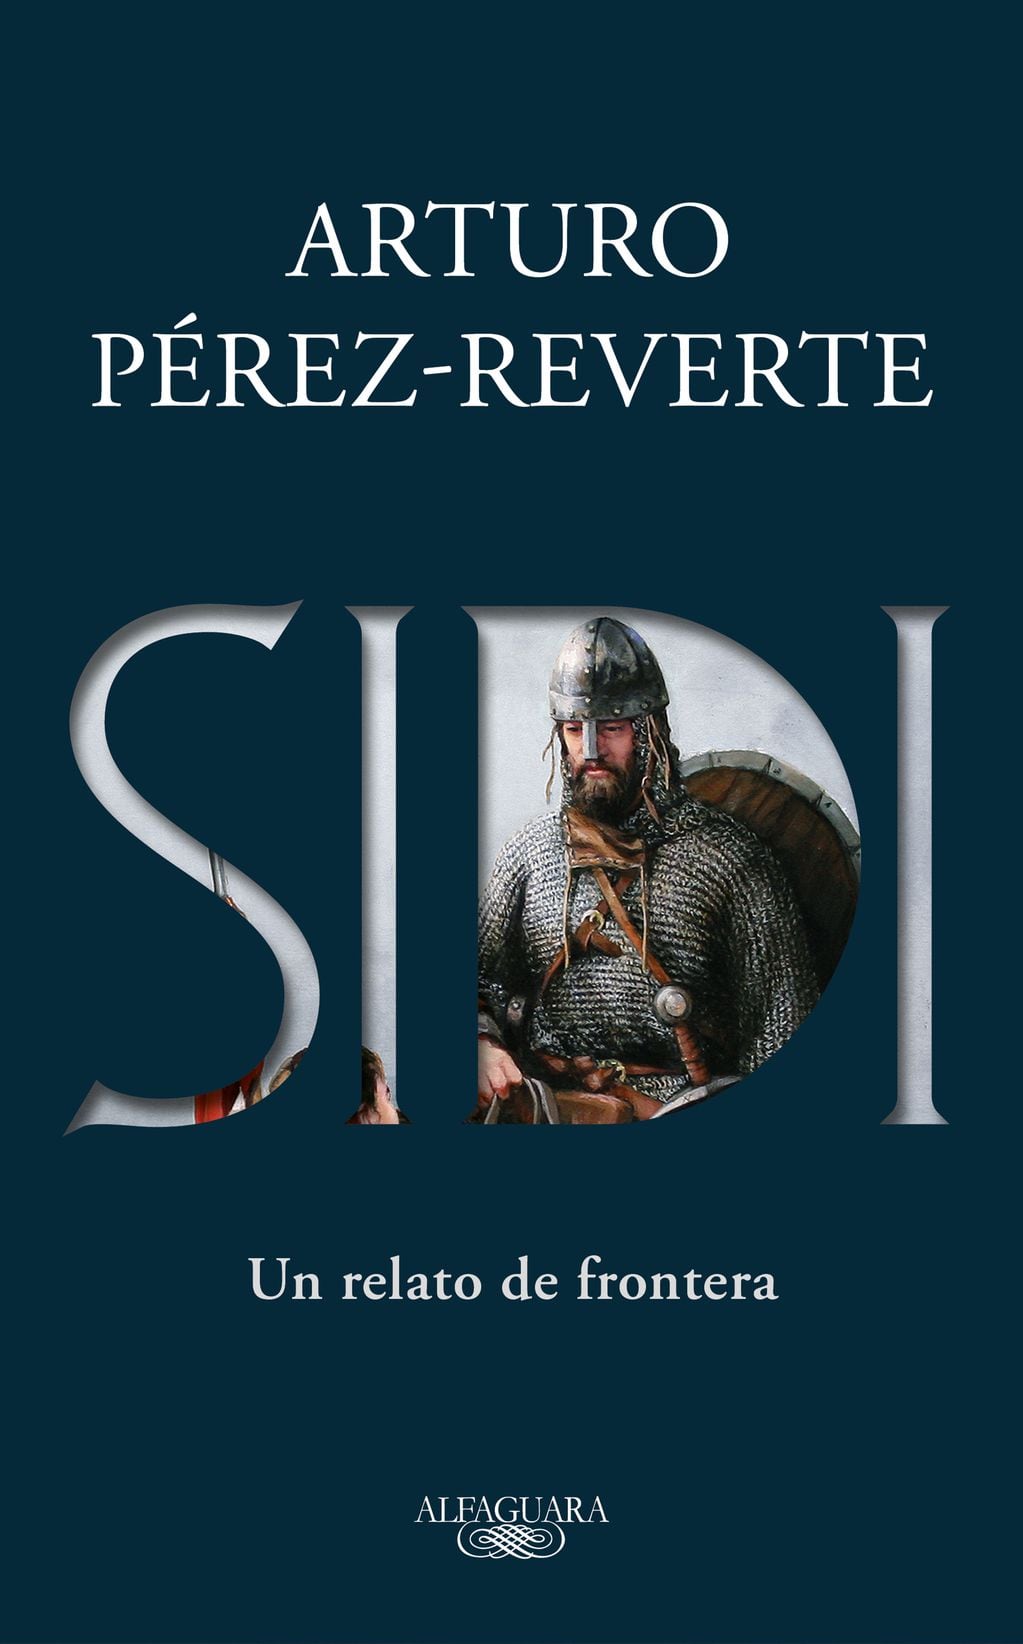 "Sidi", lo nuevo de Arturo Pérez-Reverte.